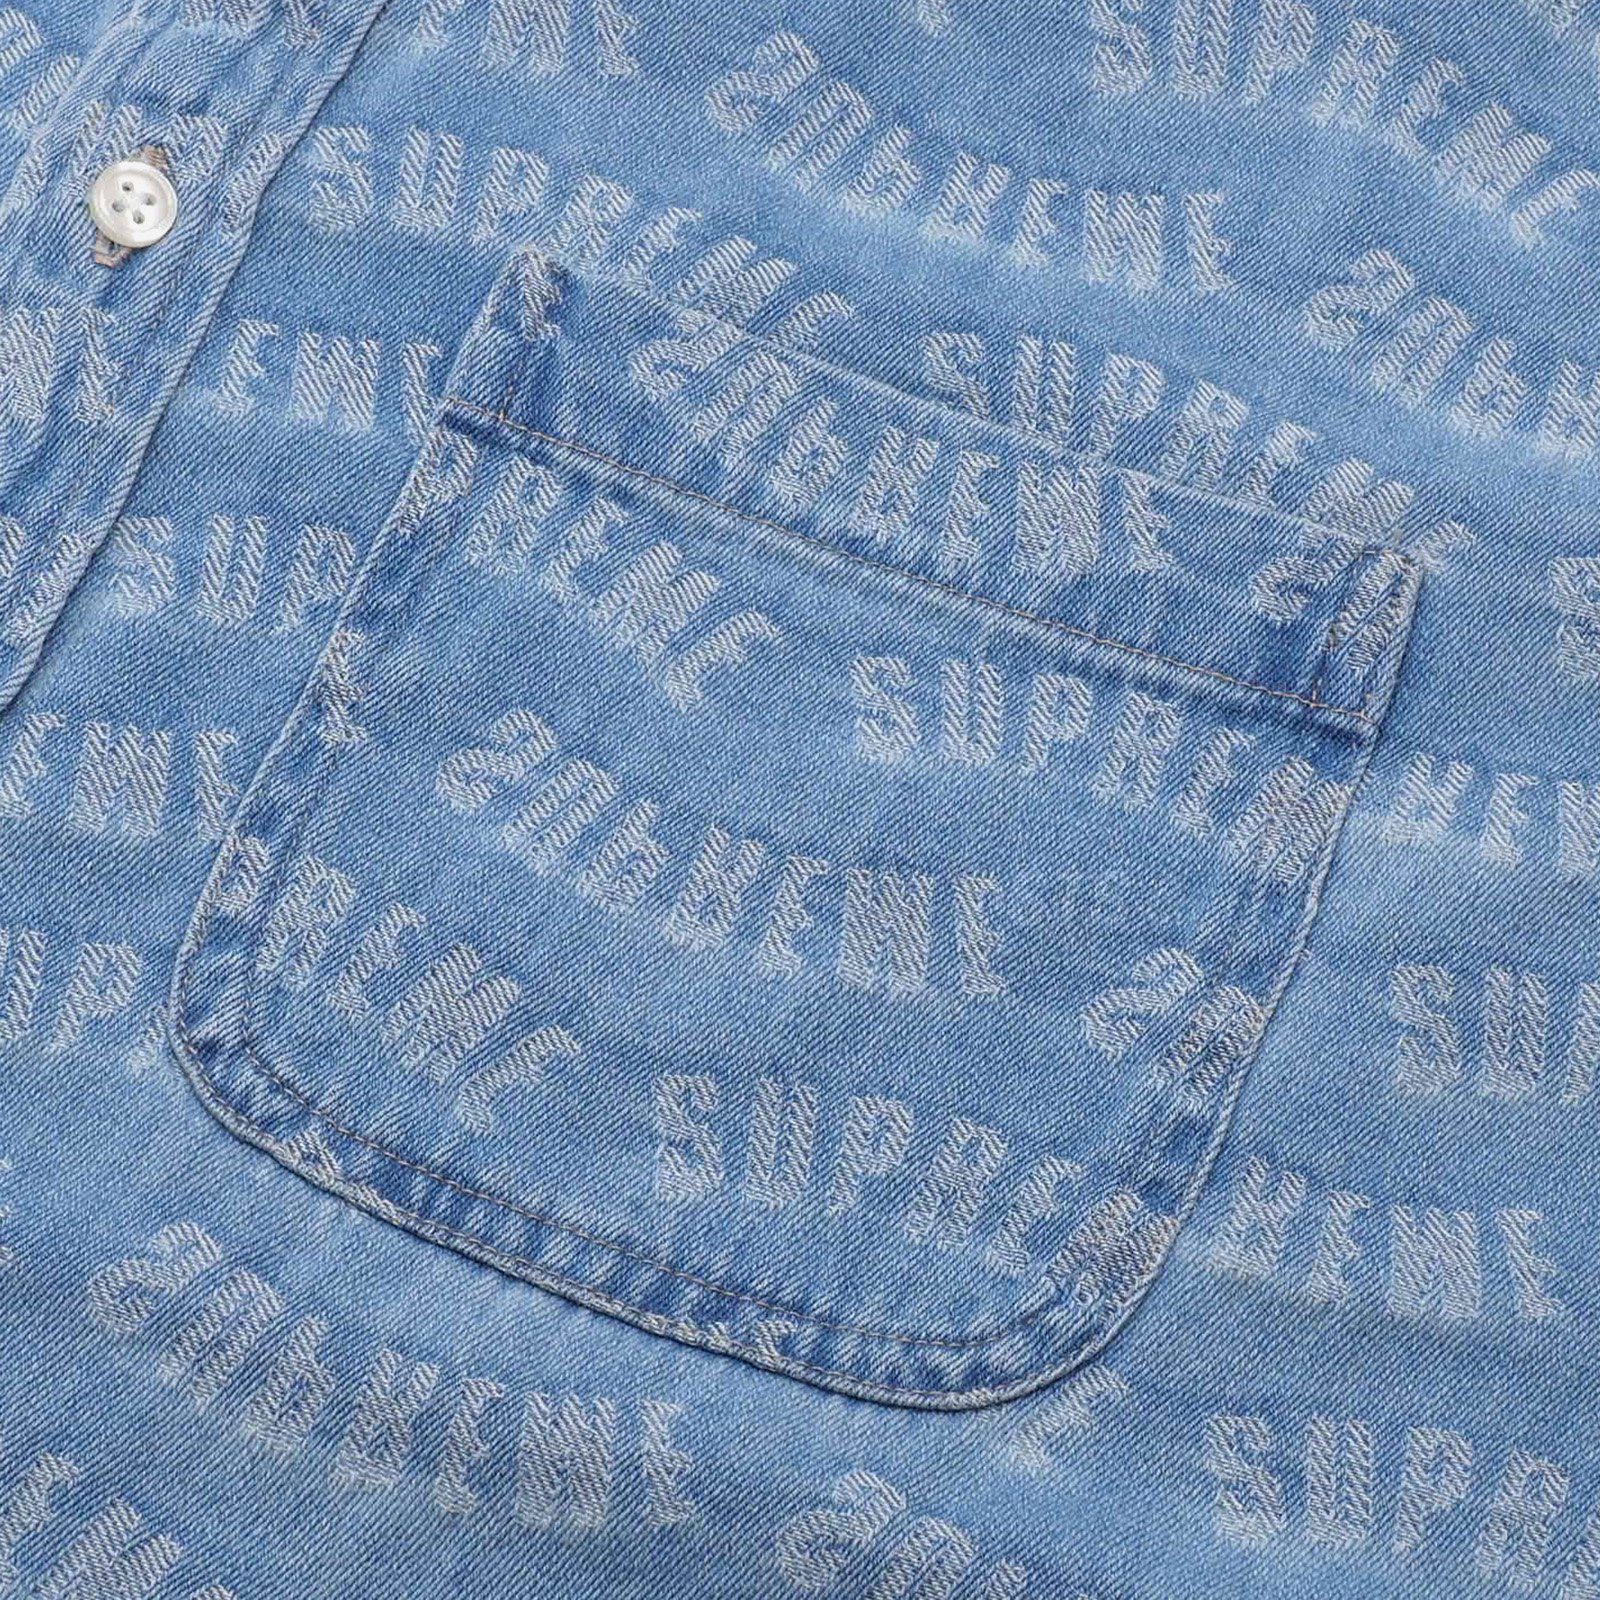 Supreme Arc Jacquard Denim Shirt "Blue"